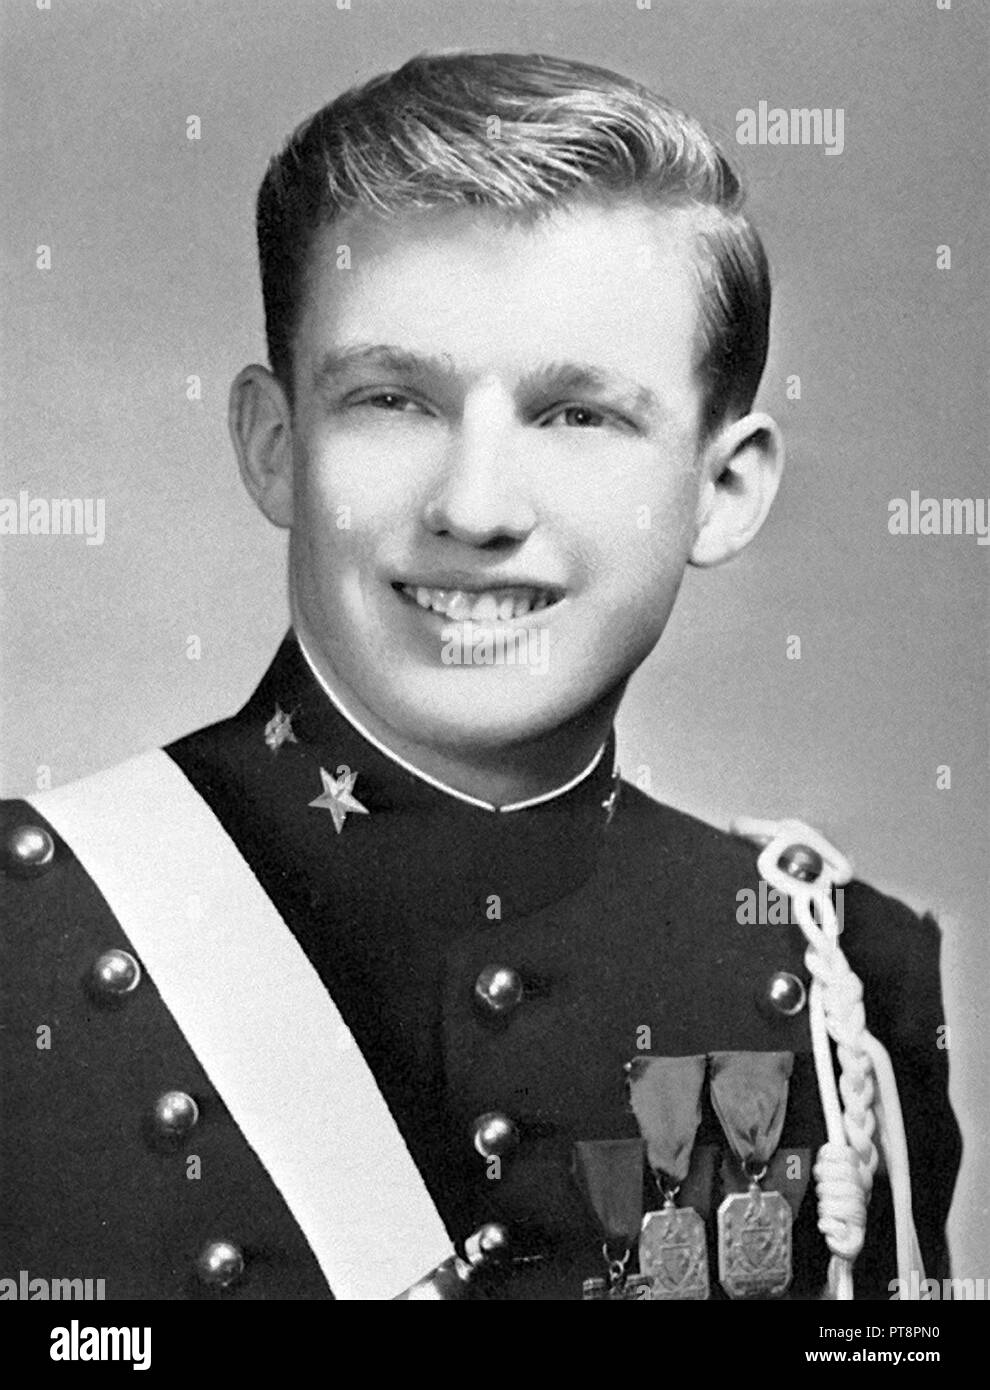 U.S presidente Donald Trump nella sua scuola militare uniforme mostrato sulla pagina 107 del suo 1964 New York Accademia Militare yearbook. Foto Stock